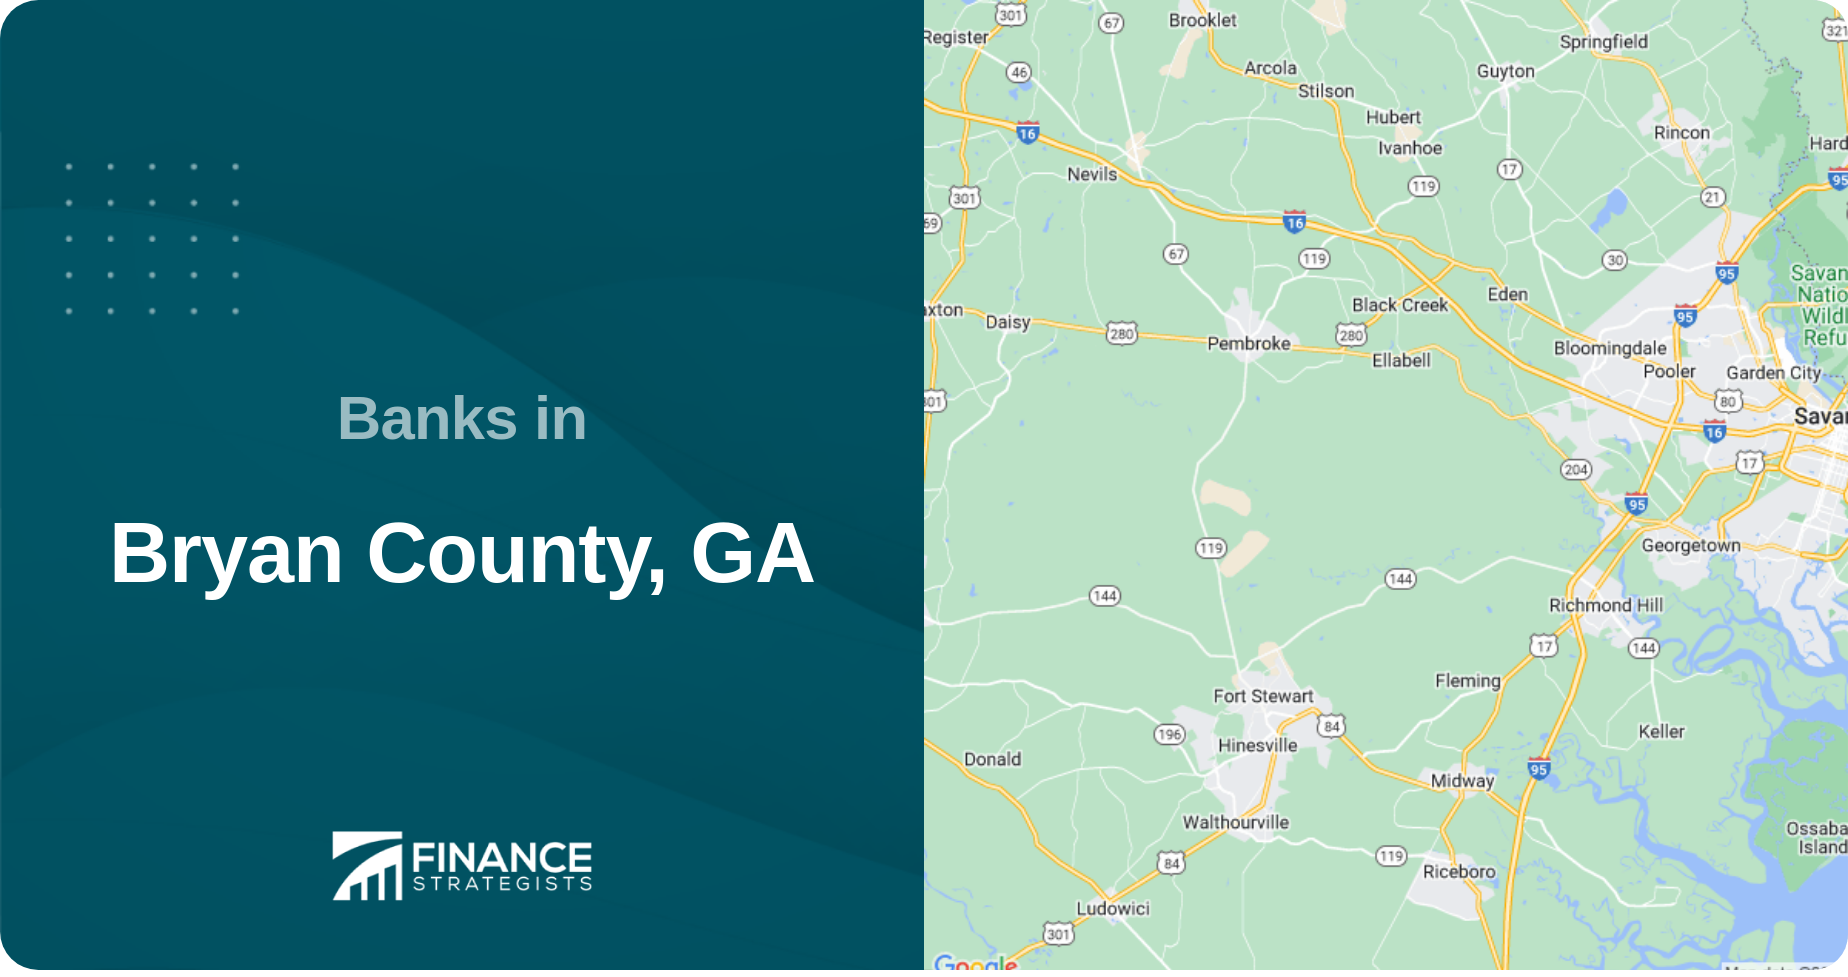 Banks in Bryan County, GA